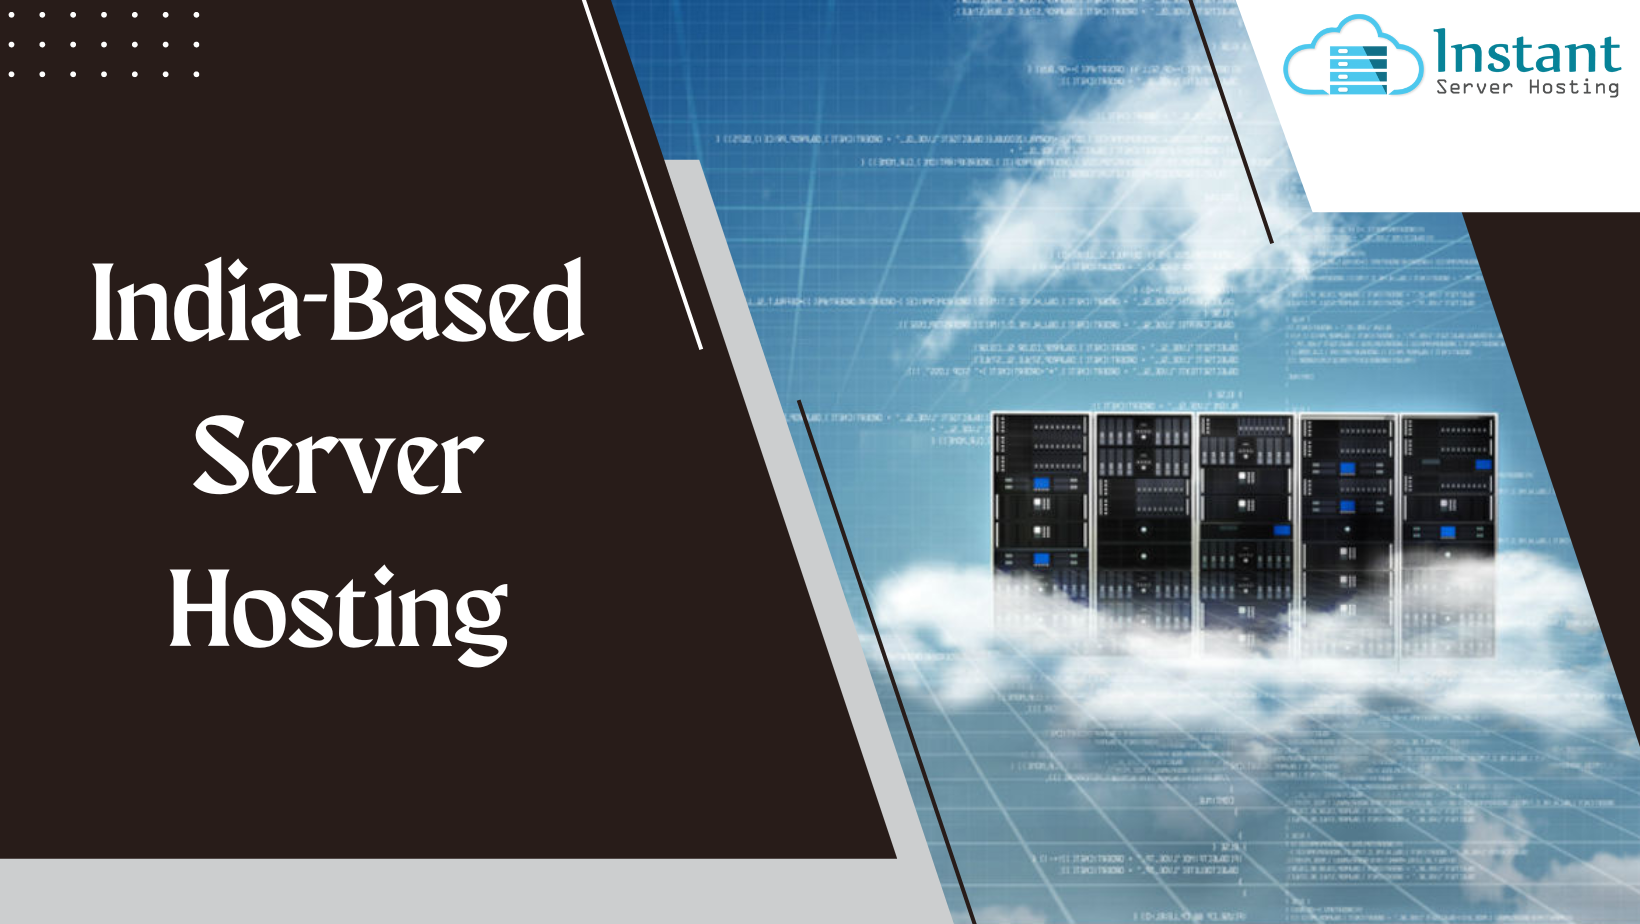 India-Based Server Hosting